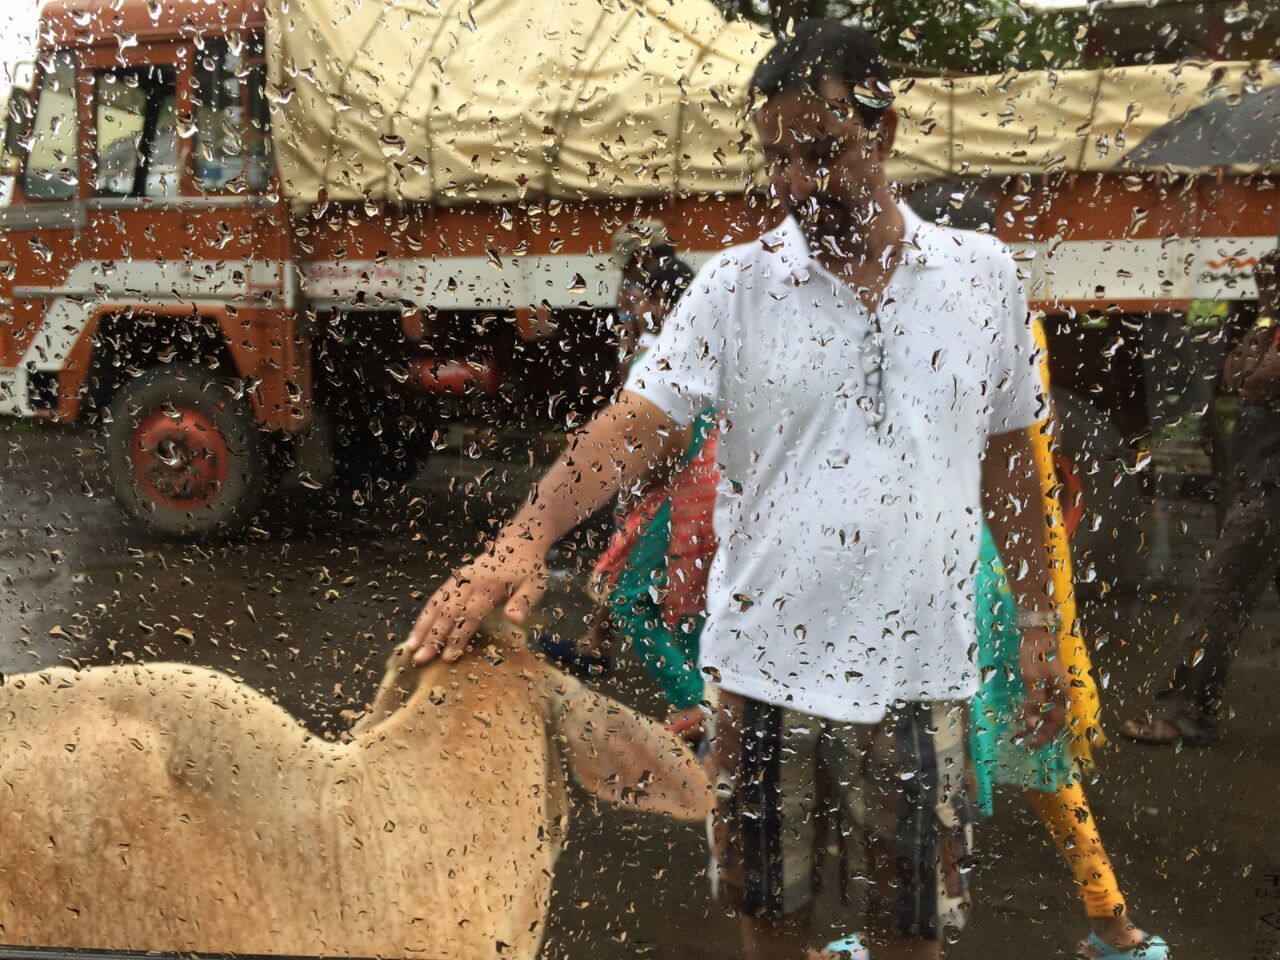 Man touching calf seen through wet glass window during monsoon